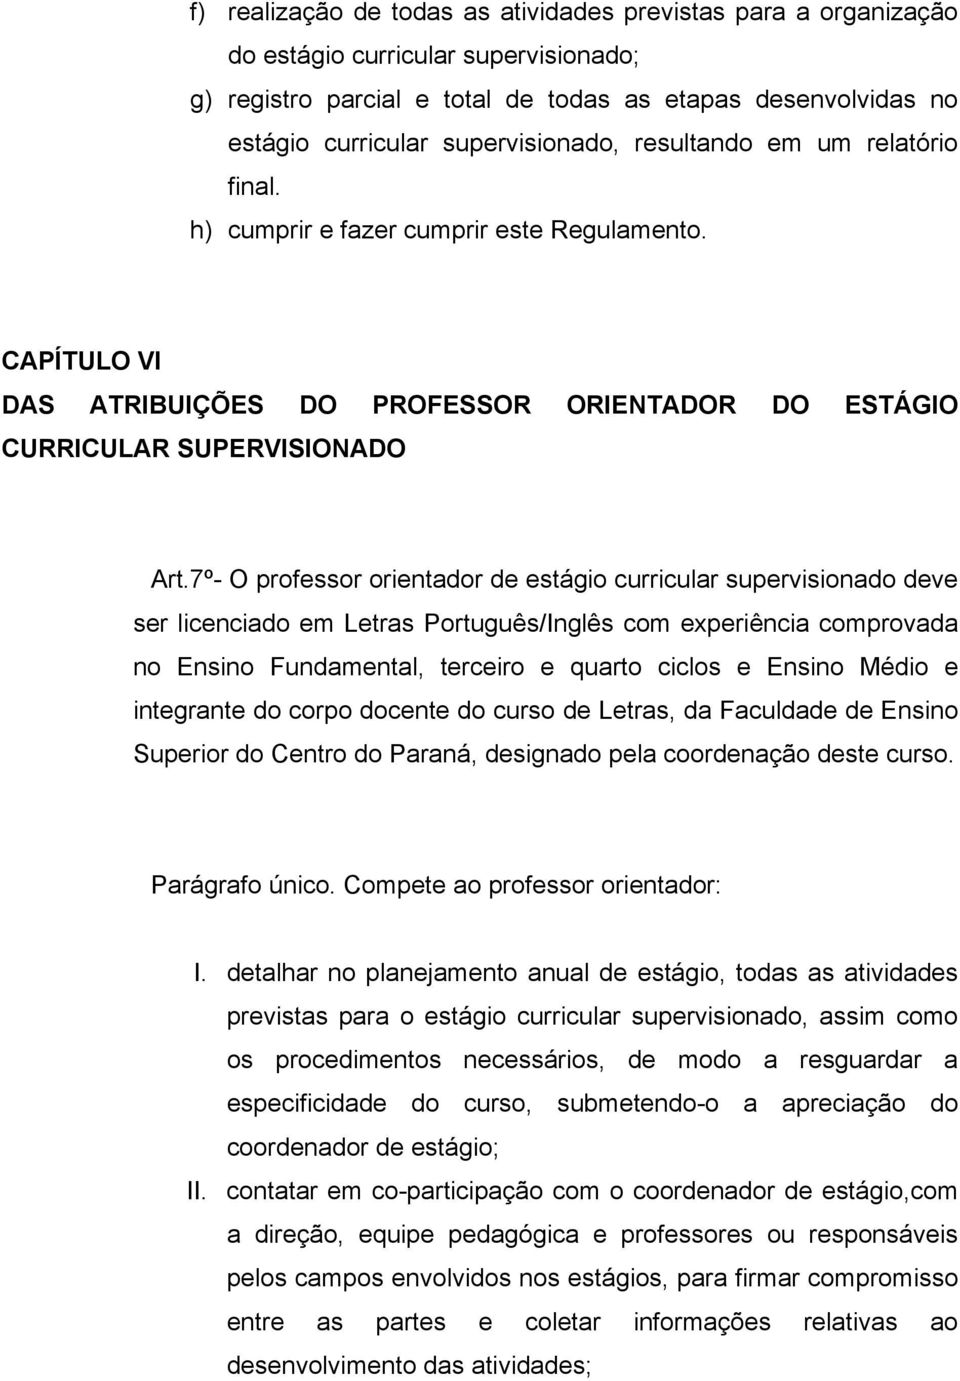 7º- O professor orientador de estágio curricular supervisionado deve ser licenciado em Letras Português/Inglês com experiência comprovada no Ensino Fundamental, terceiro e quarto ciclos e Ensino